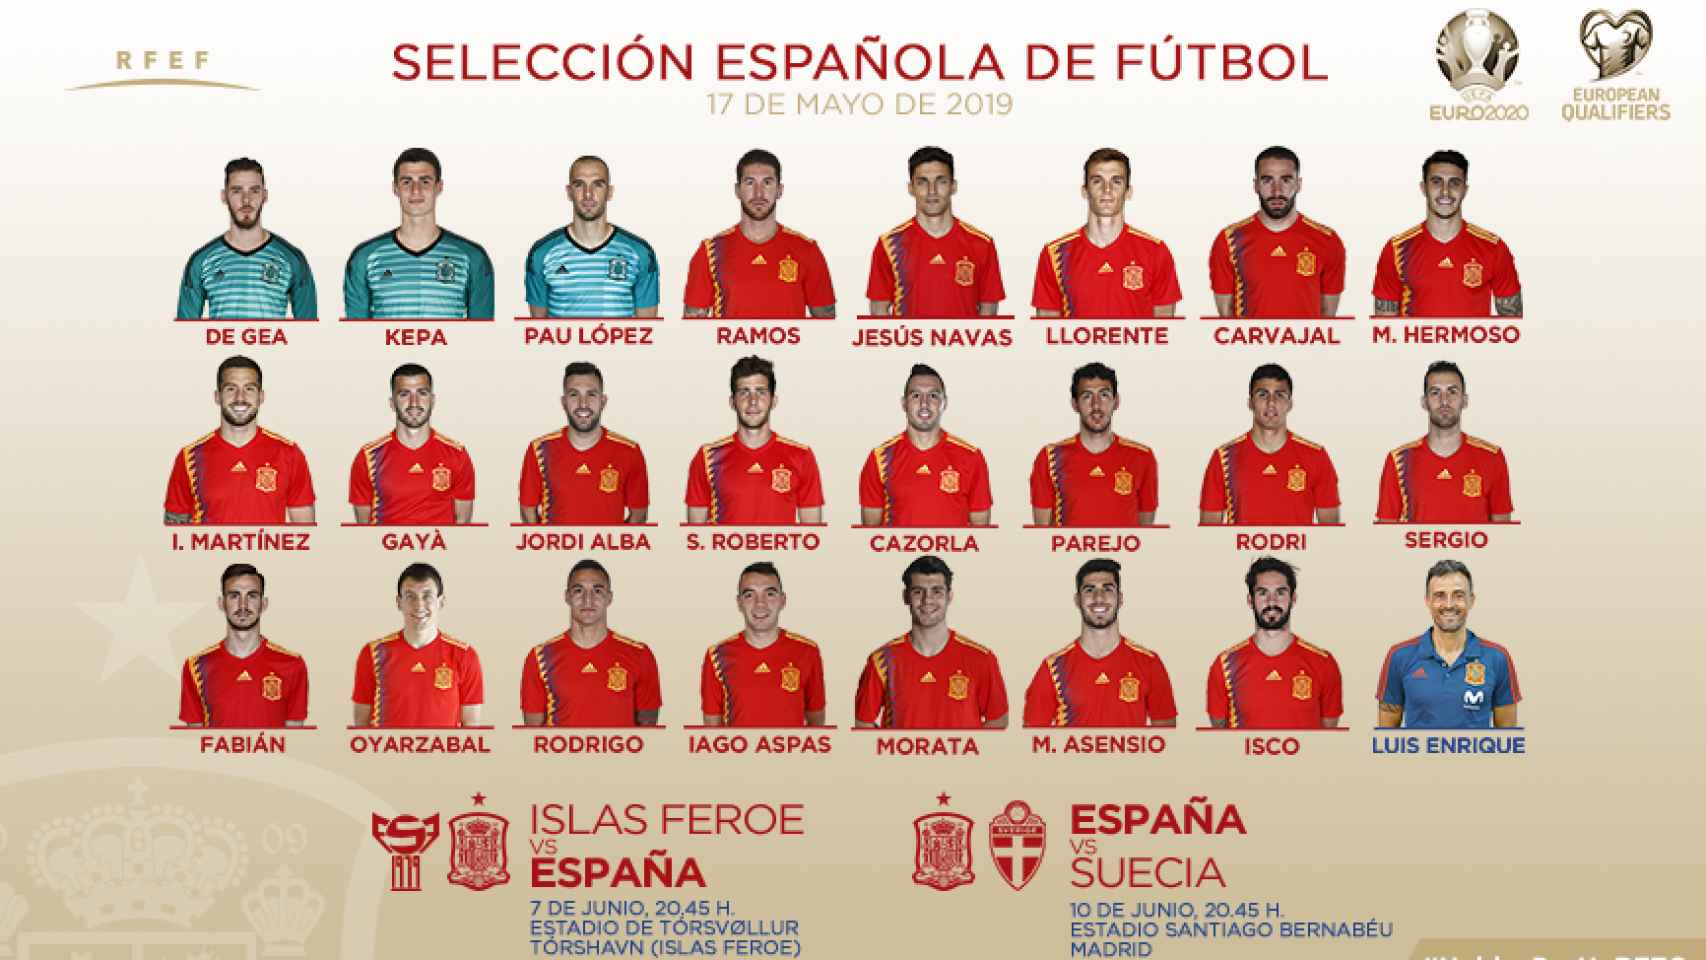 Convocatoria de la Selección española para los partidos contra las Islas Feroe y Suecia. Fuente: sefutbol.com